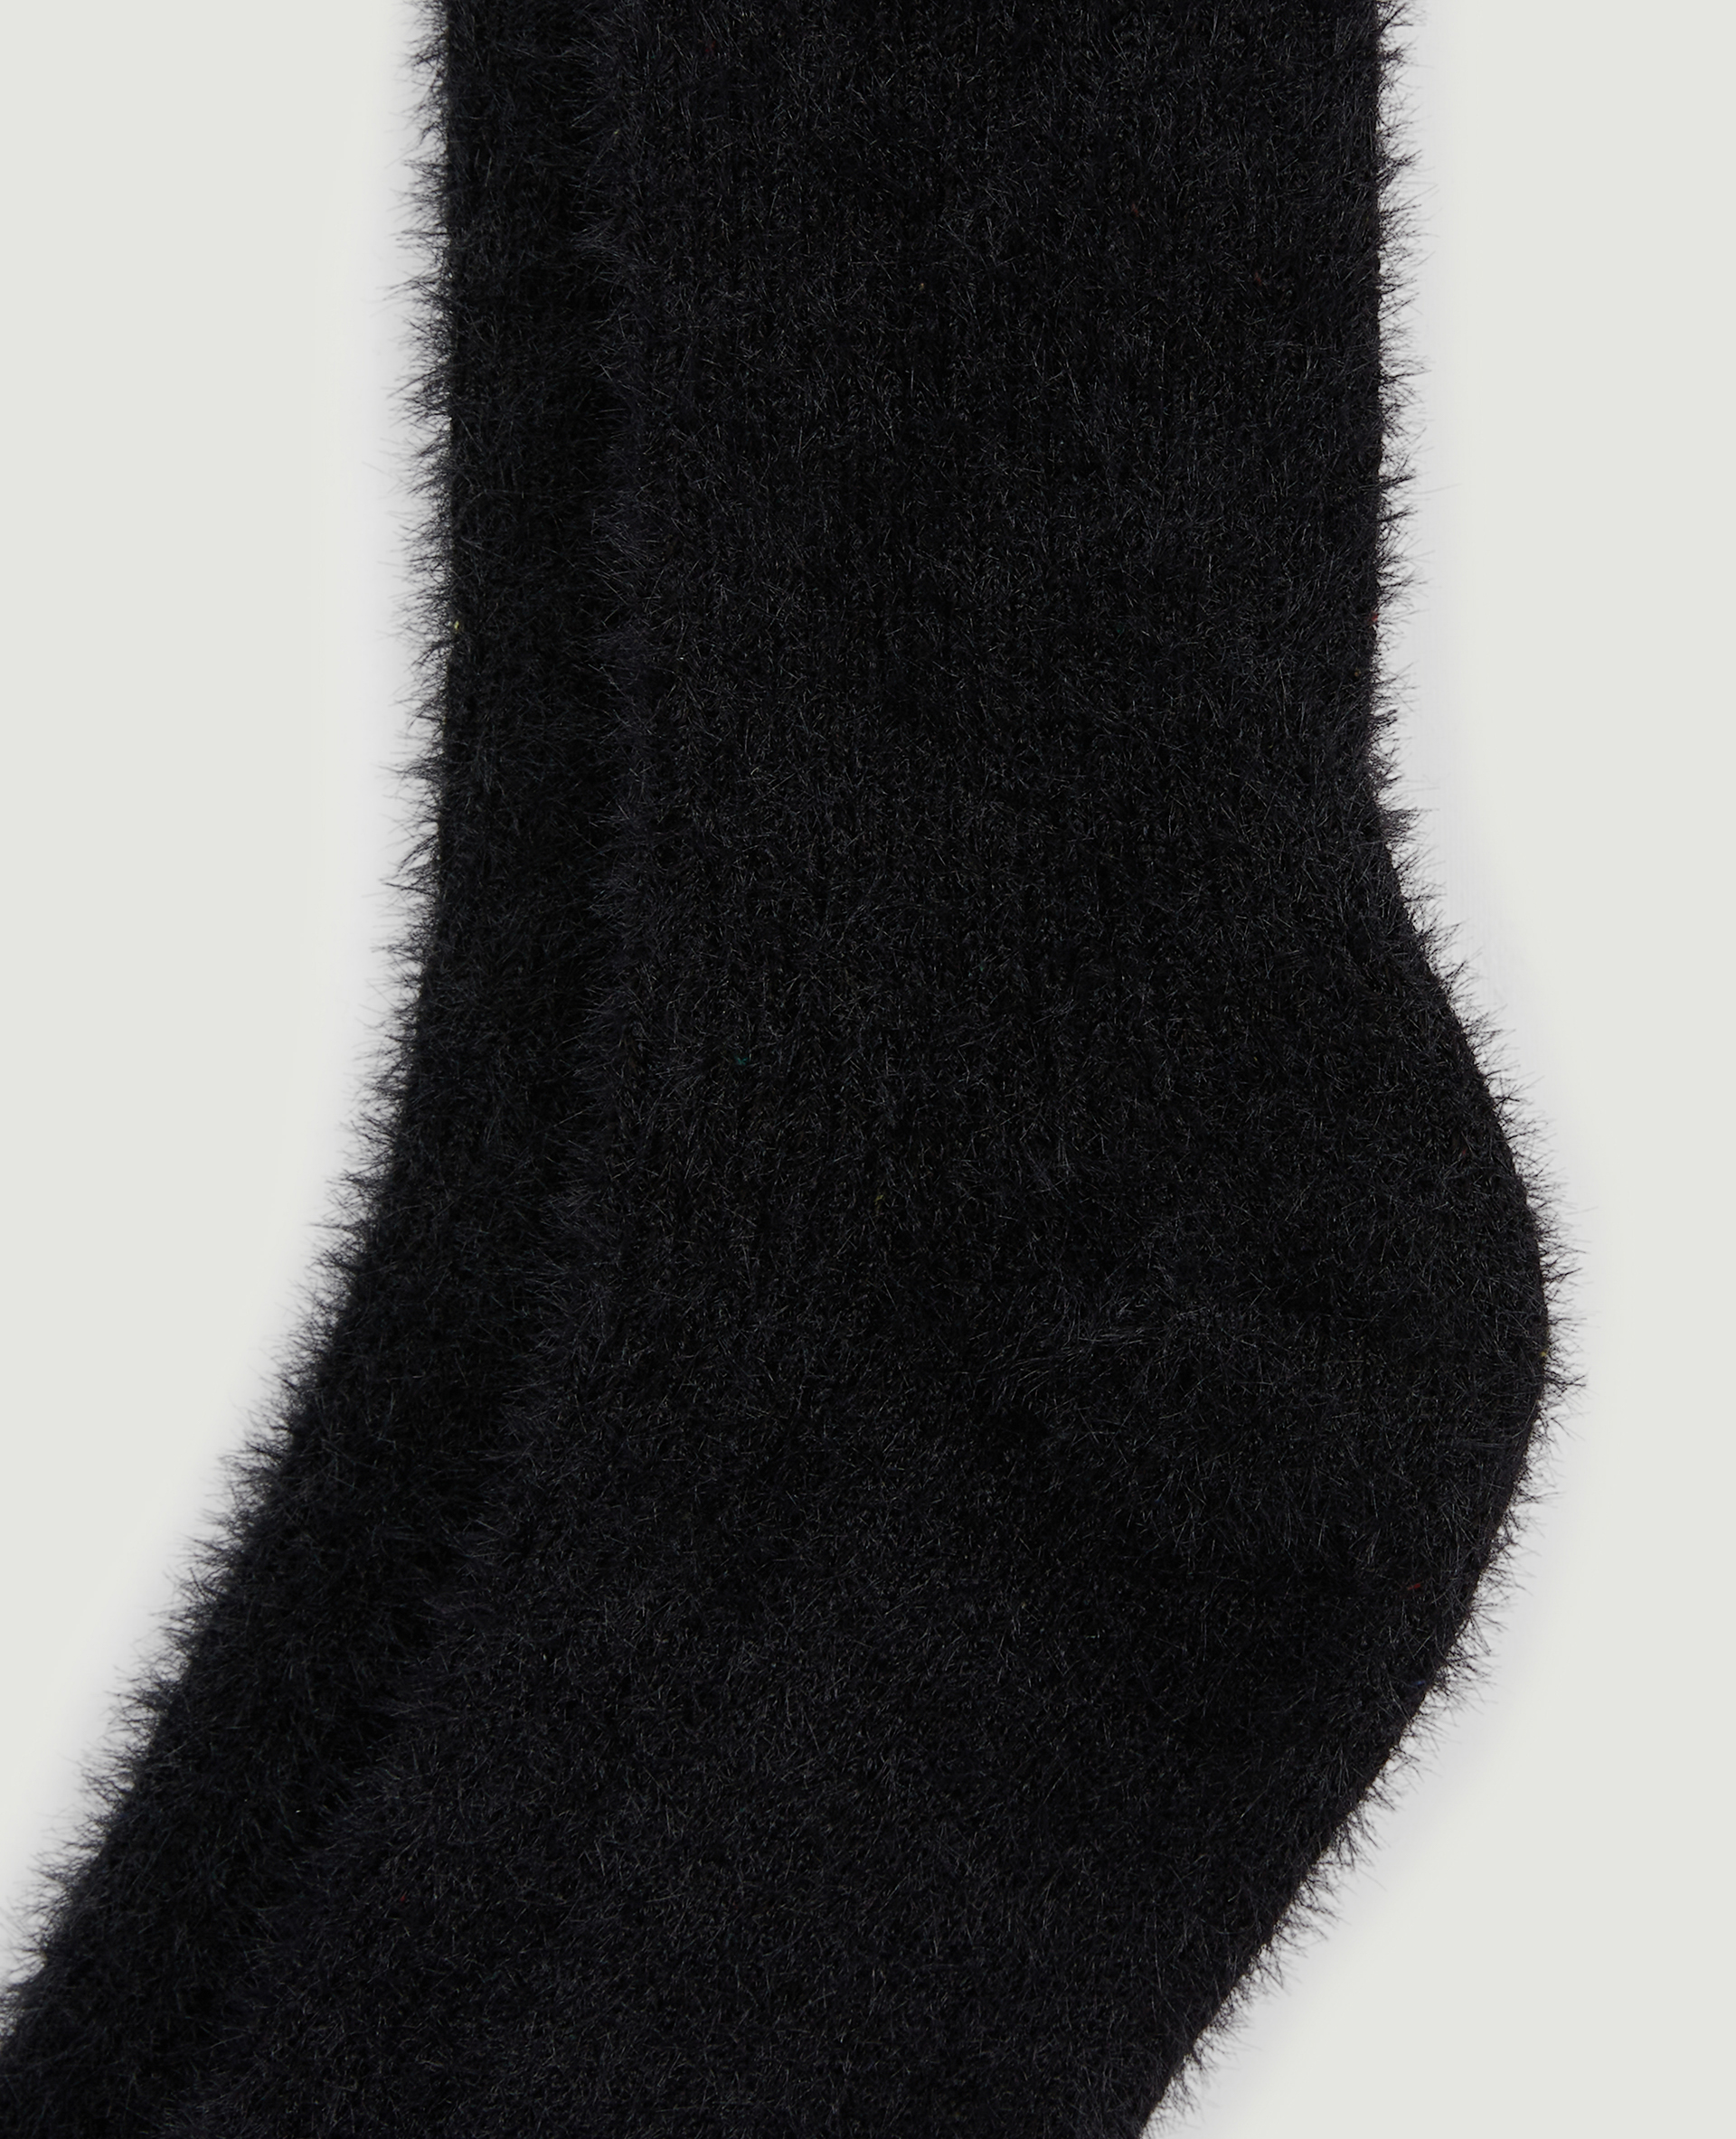 Paire de chaussettes poilues noir - Pimkie